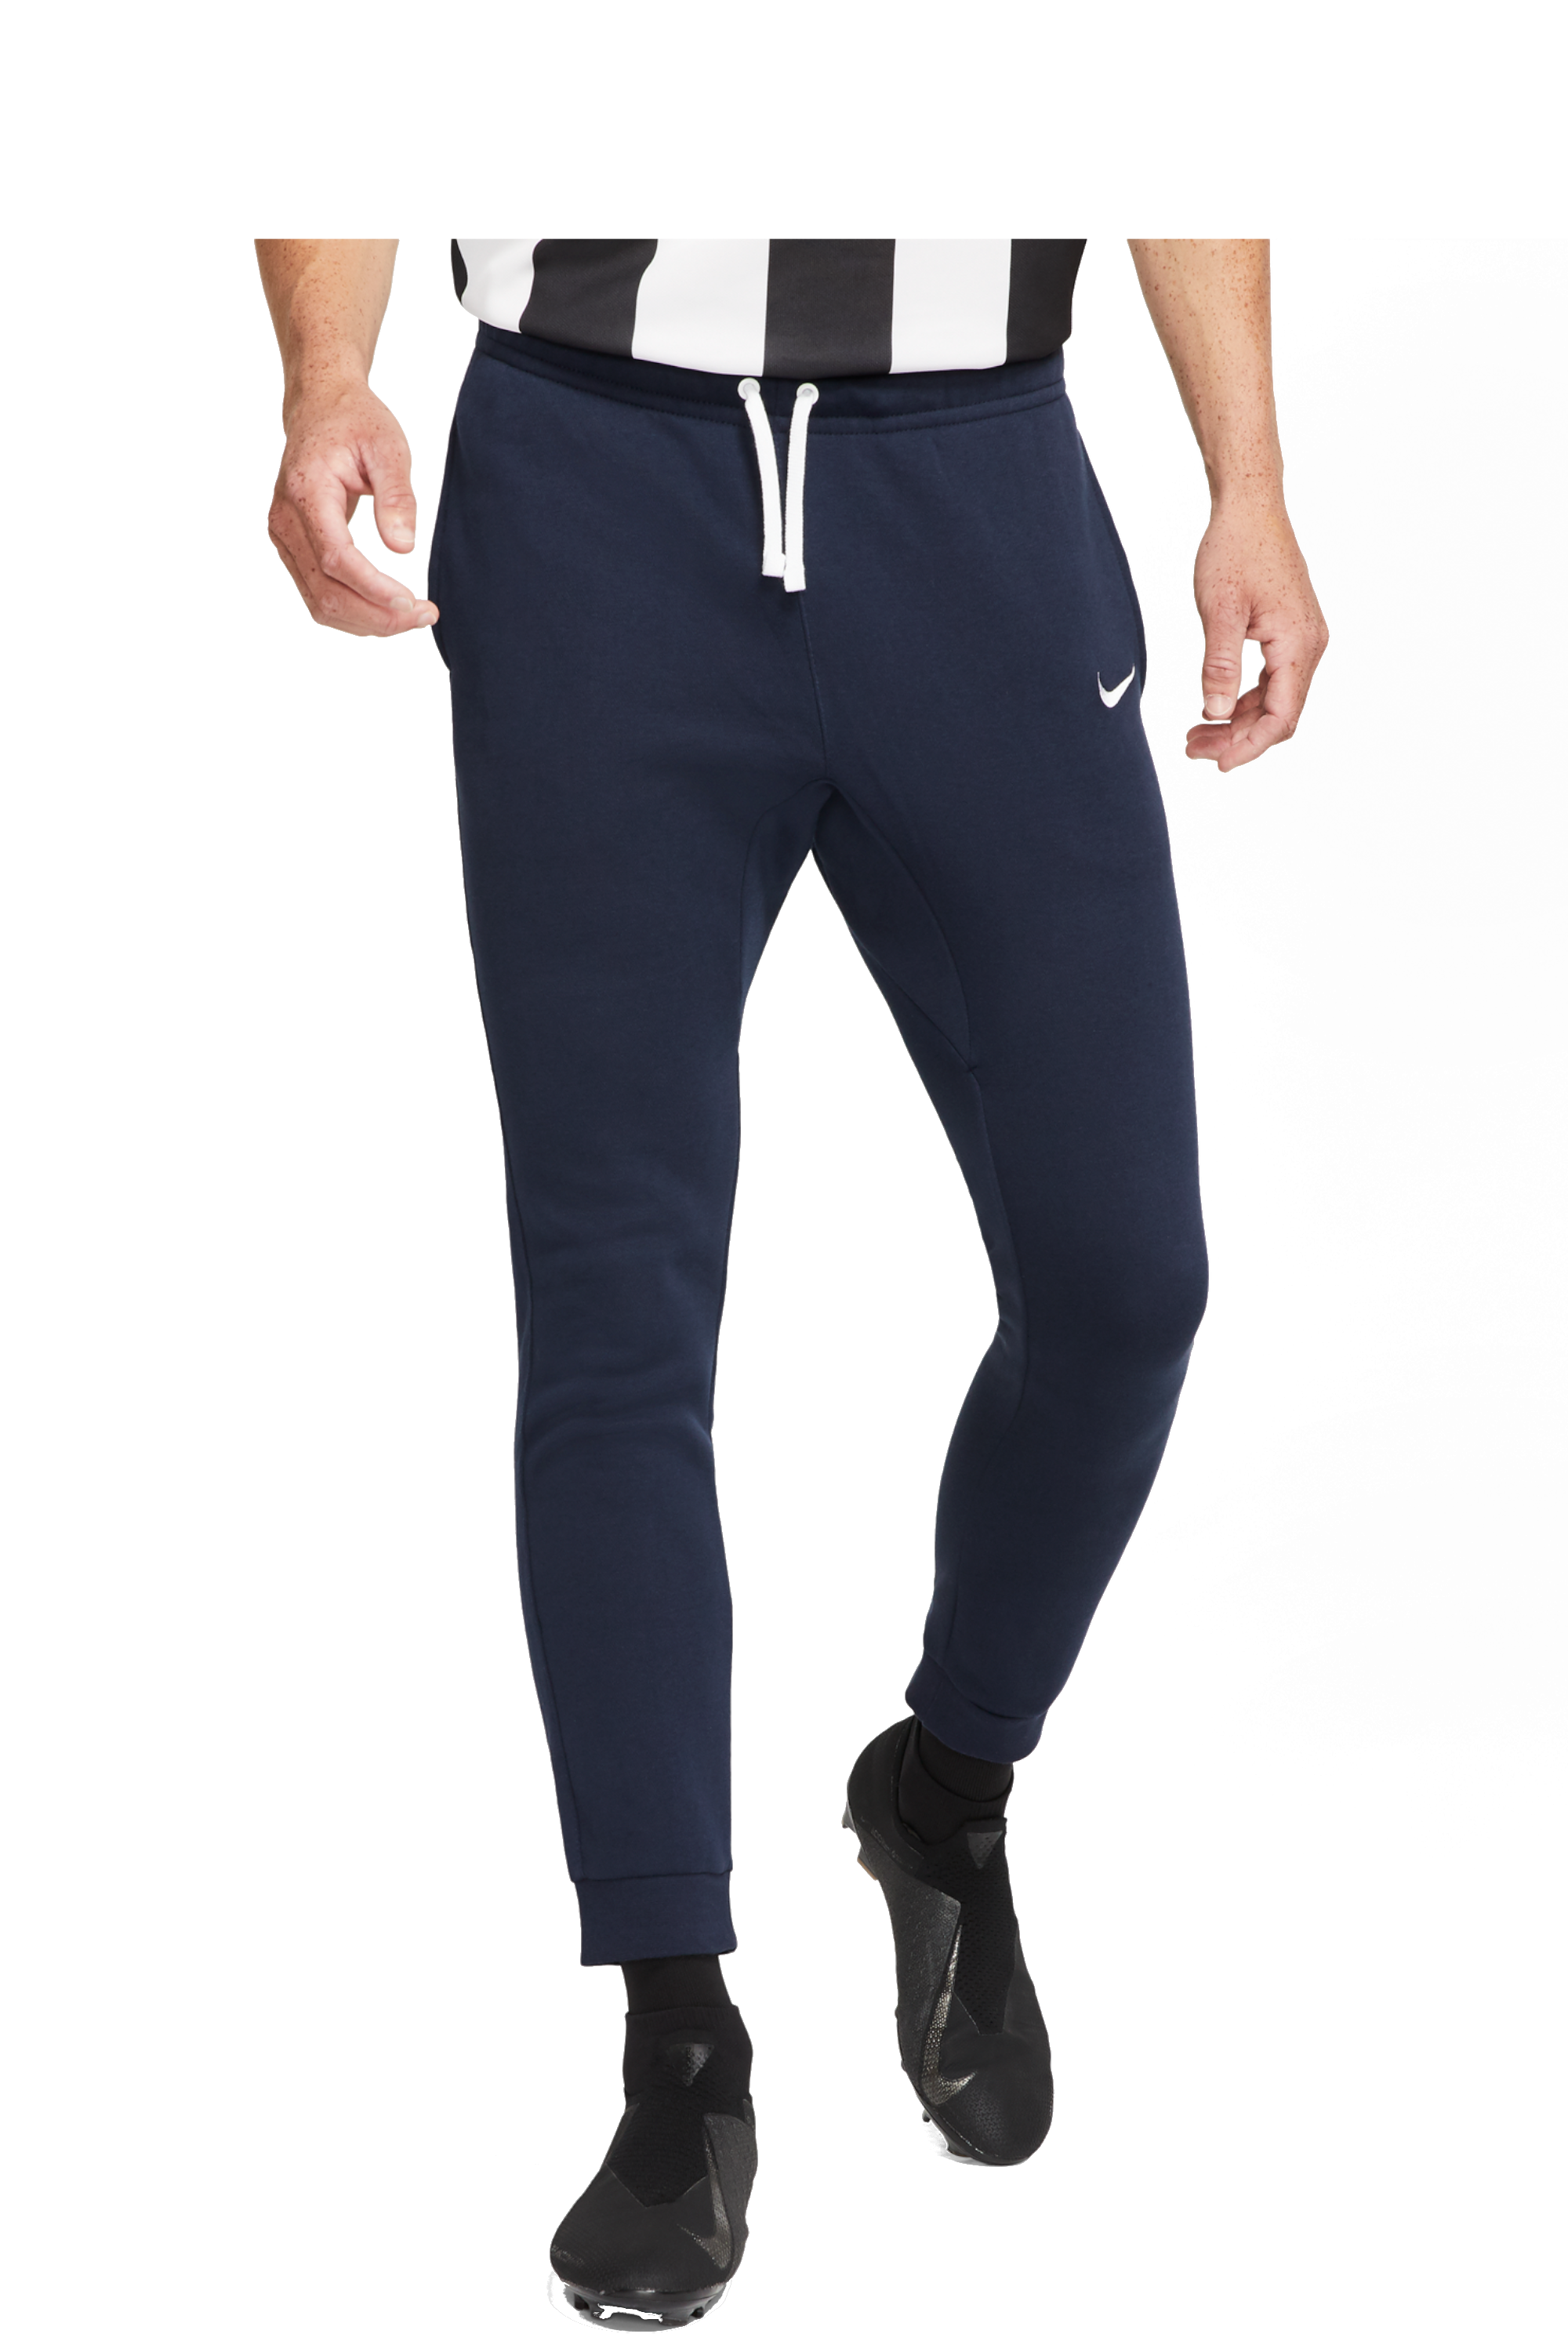 Pants Nike Team Club 19 | R-GOL.com 